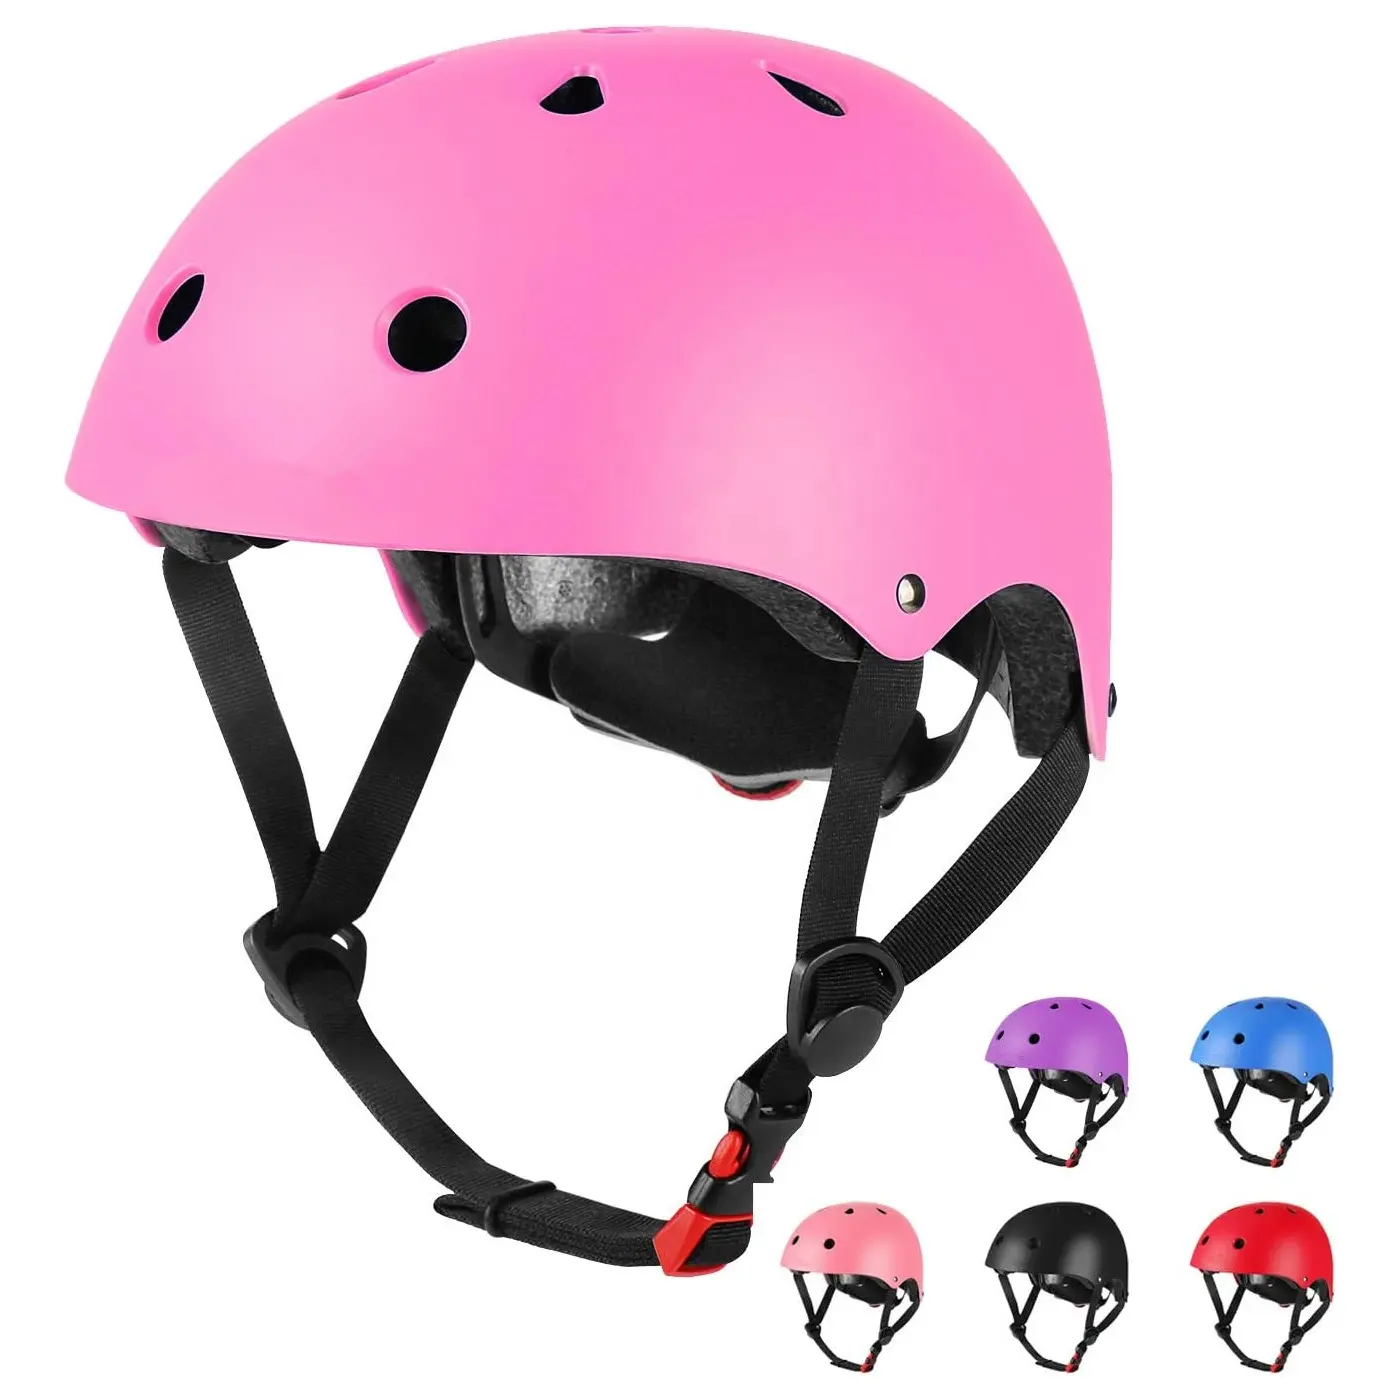 Оптовая продажа, шлем для роликовых коньков для взрослых и детей, красочный шлем для скейтборда, безопасный велосипедный шлем для детей и взрослых